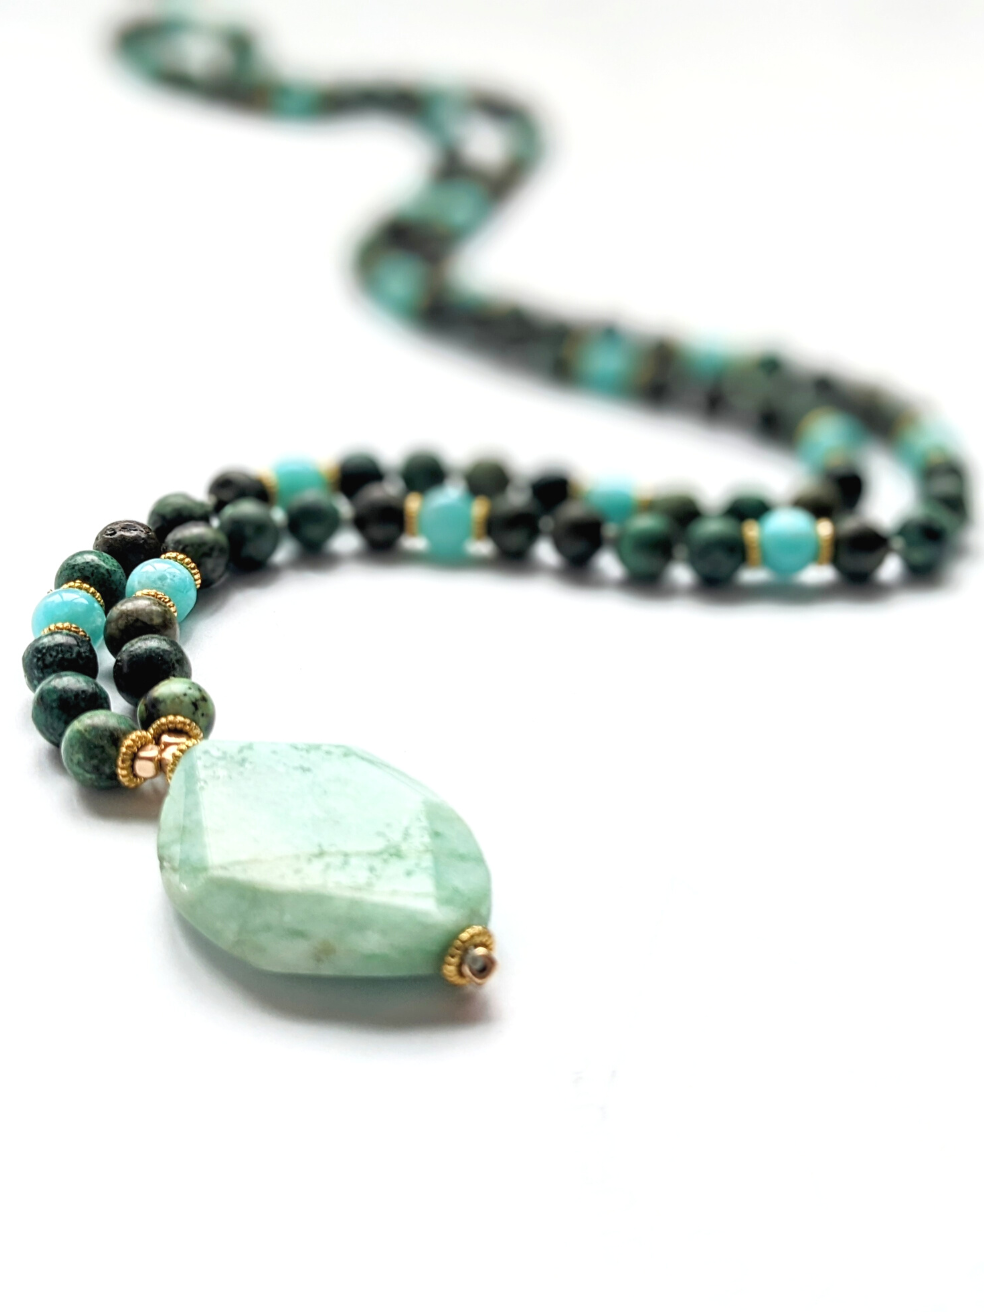 Healing Mala Necklace - Amazonite Stone & African Turquoise